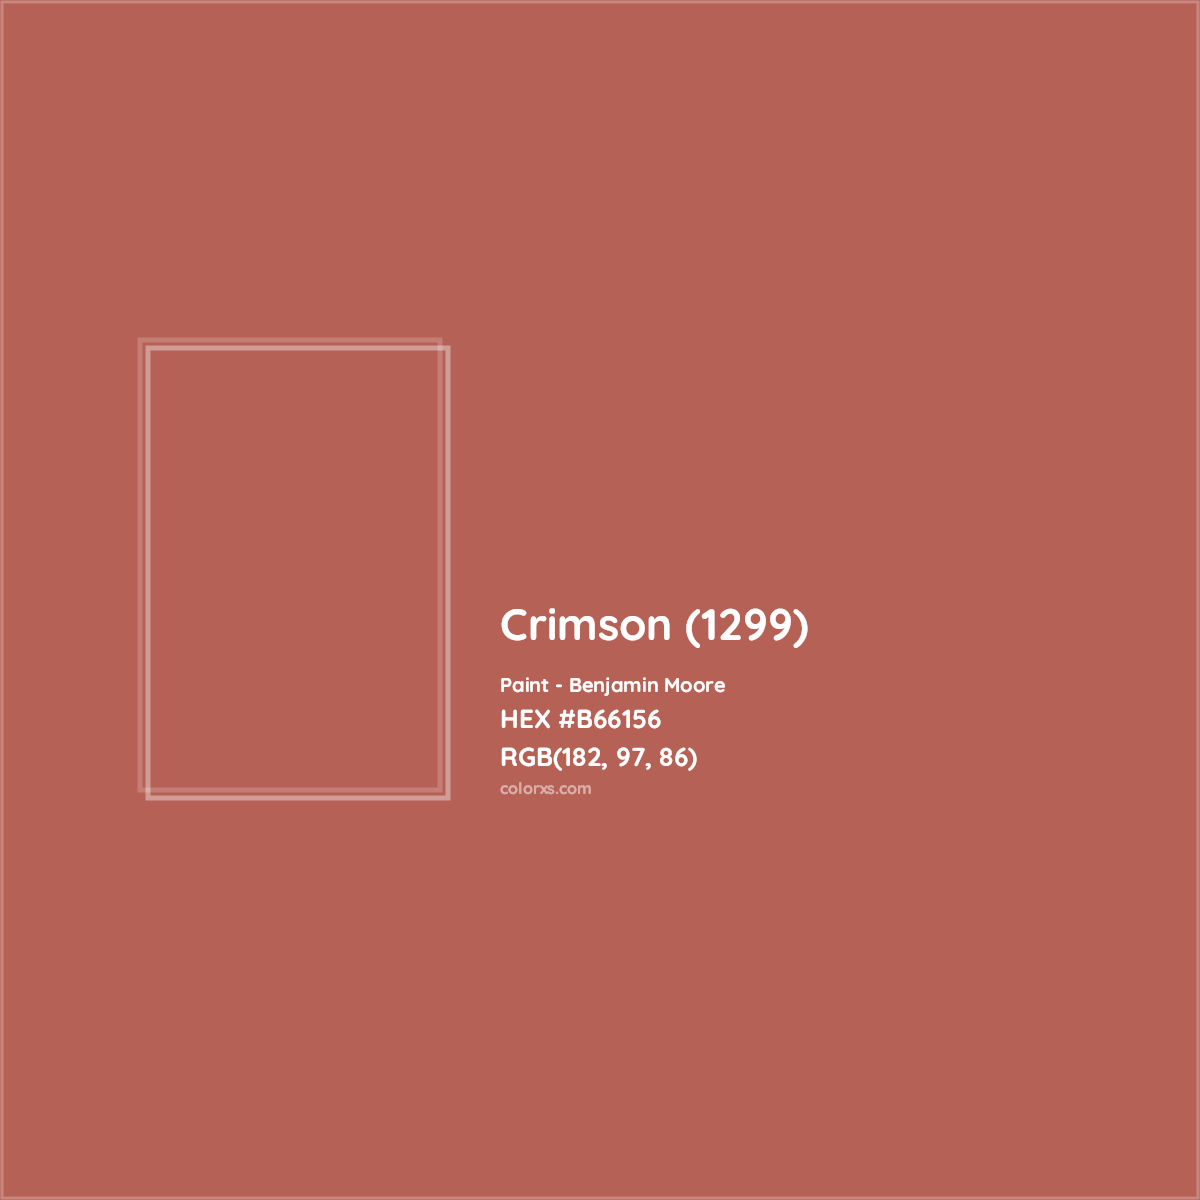 HEX #B66156 Crimson (1299) Paint Benjamin Moore - Color Code